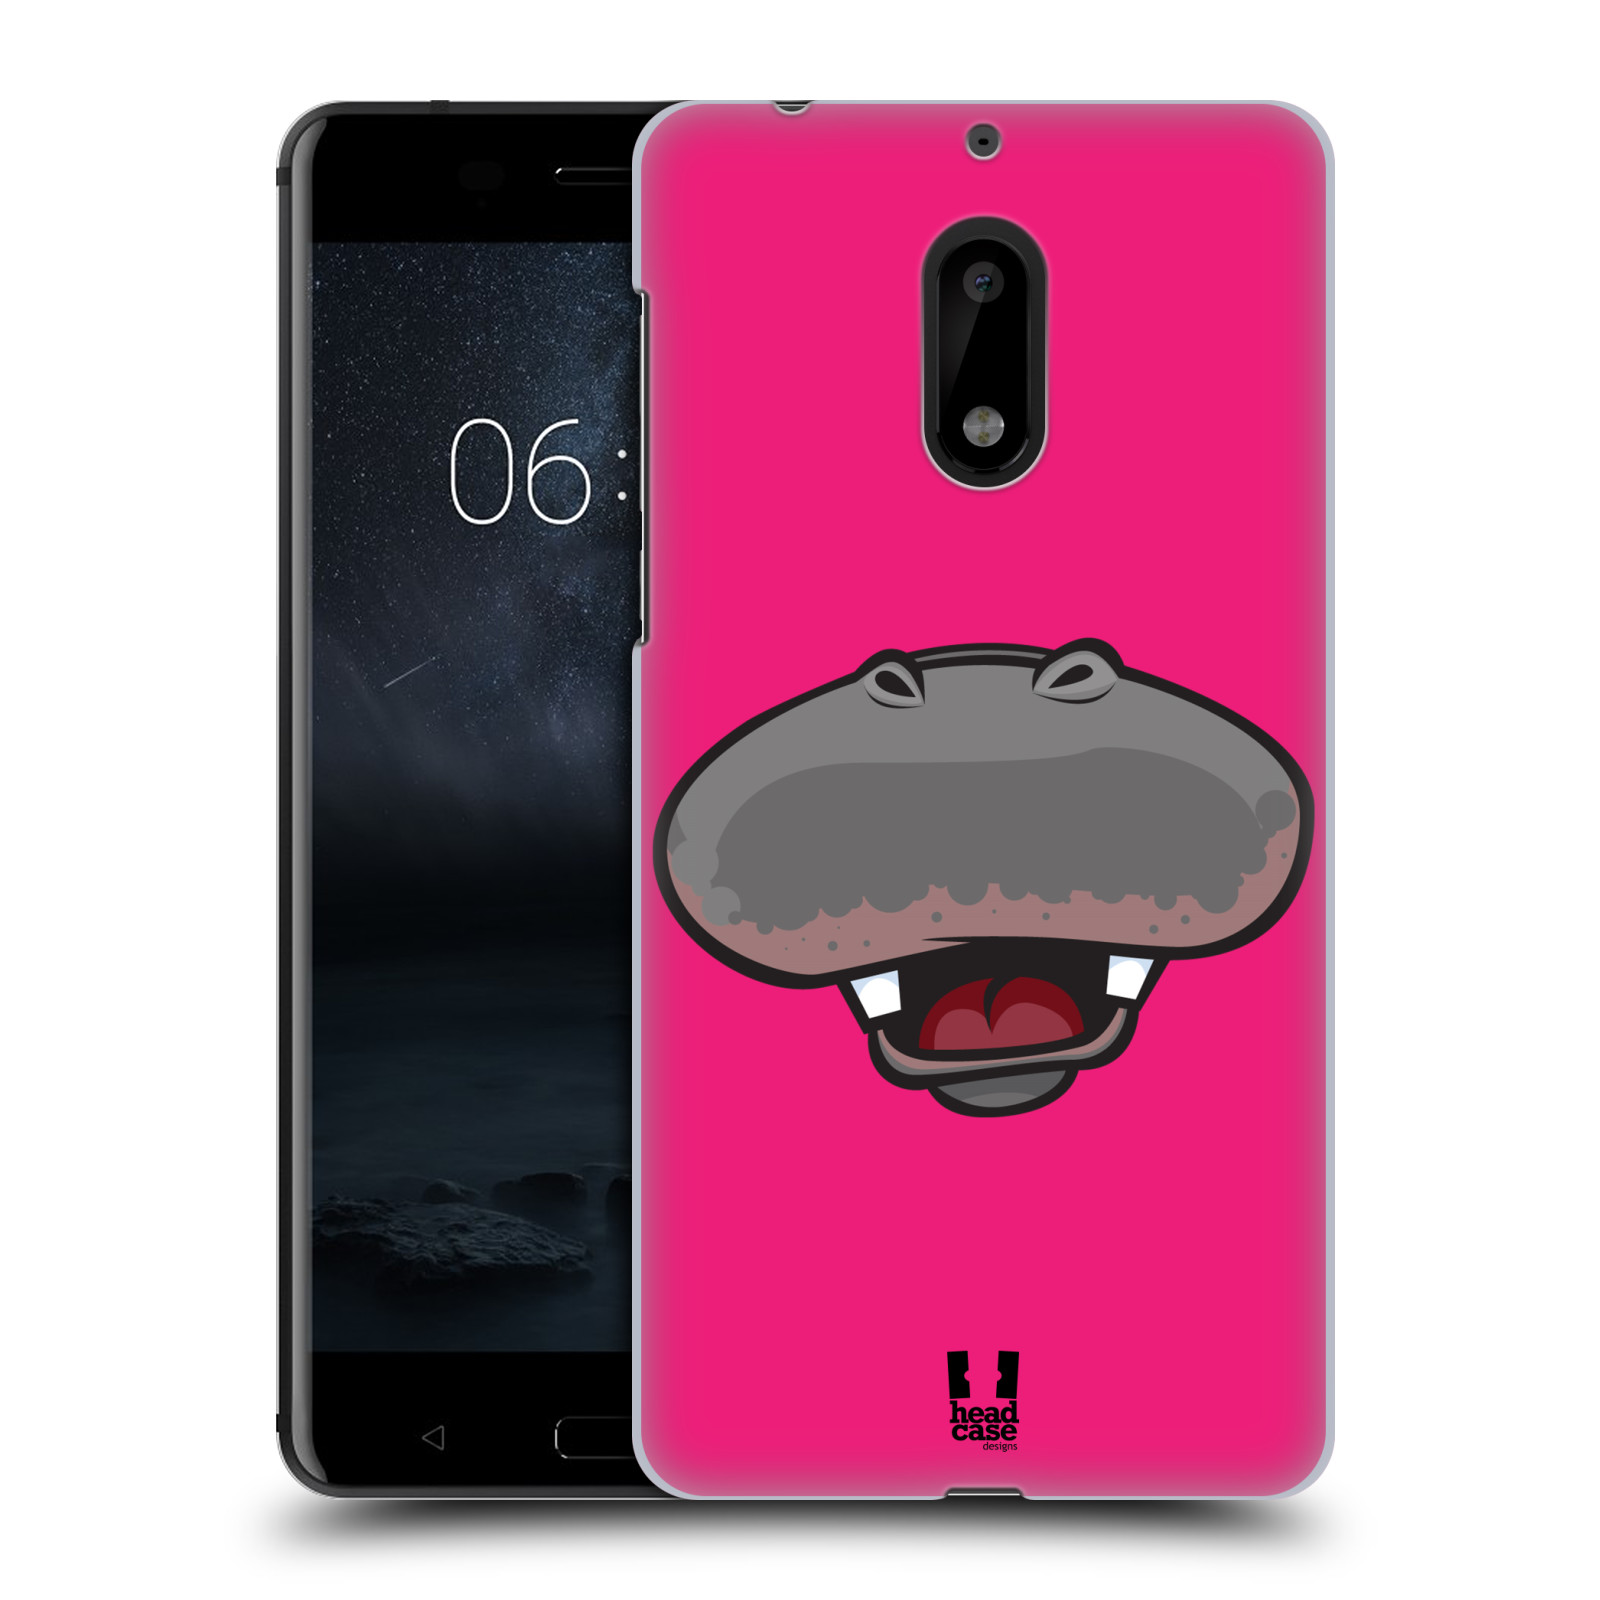 HEAD CASE plastový obal na mobil Nokia 6 vzor Zvířecí úsměv hroch růžová